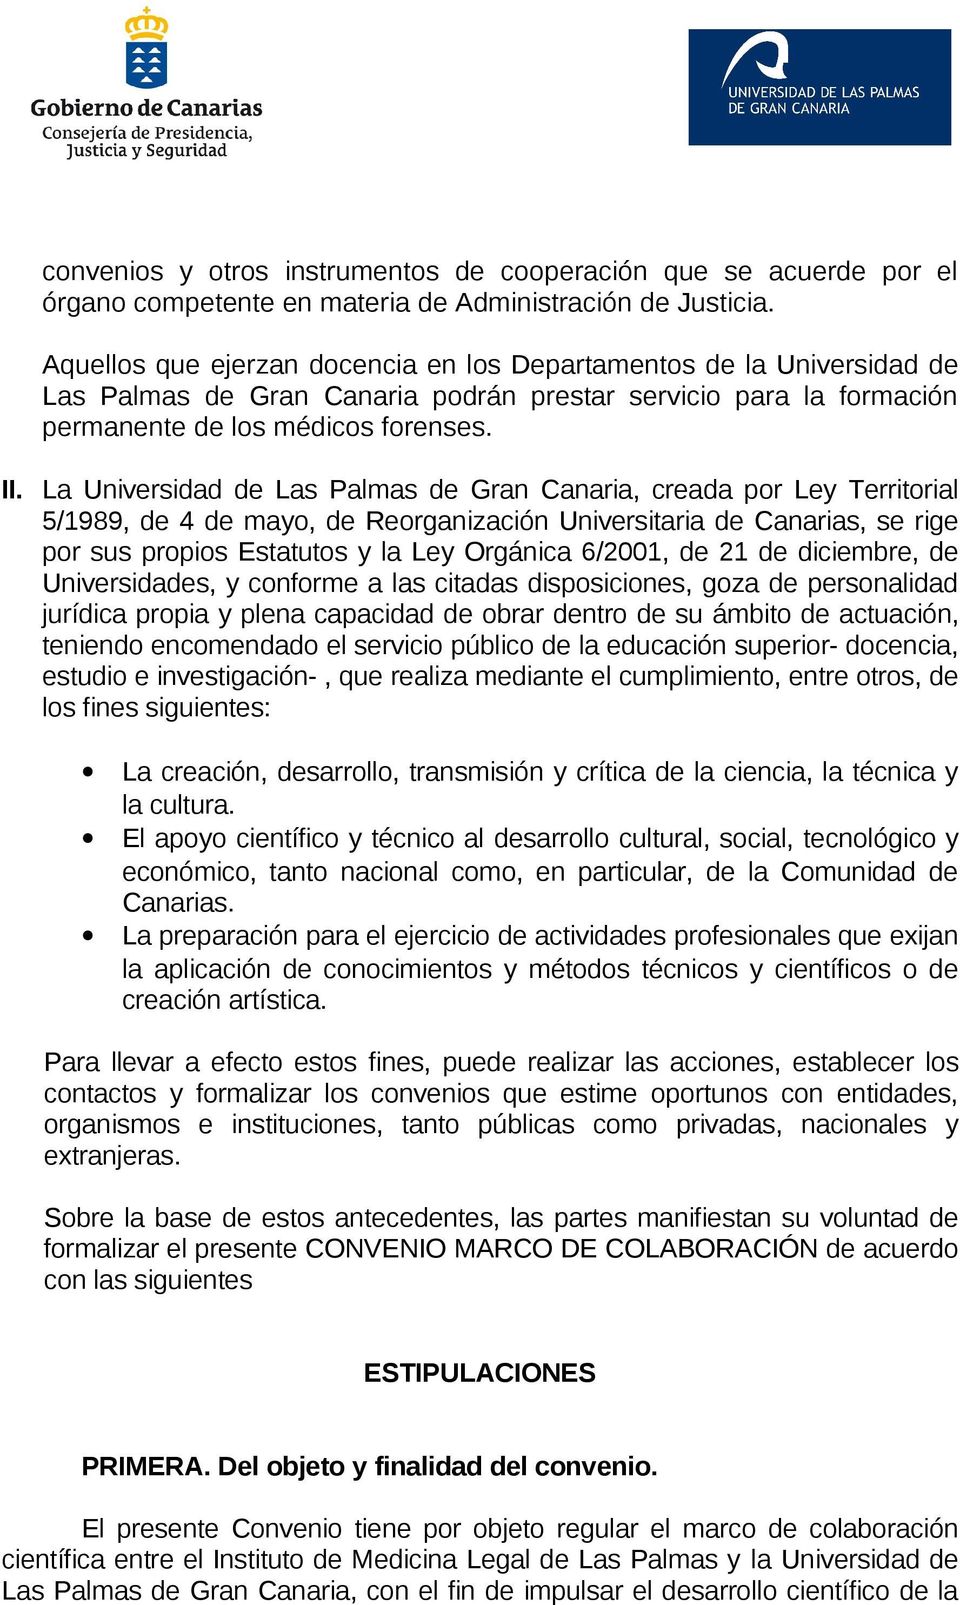 La Universidad de Las Palmas de Gran Canaria, creada por Ley Territorial 5/1989, de 4 de mayo, de Reorganización Universitaria de Canarias, se rige por sus propios Estatutos y la Ley Orgánica 6/2001,